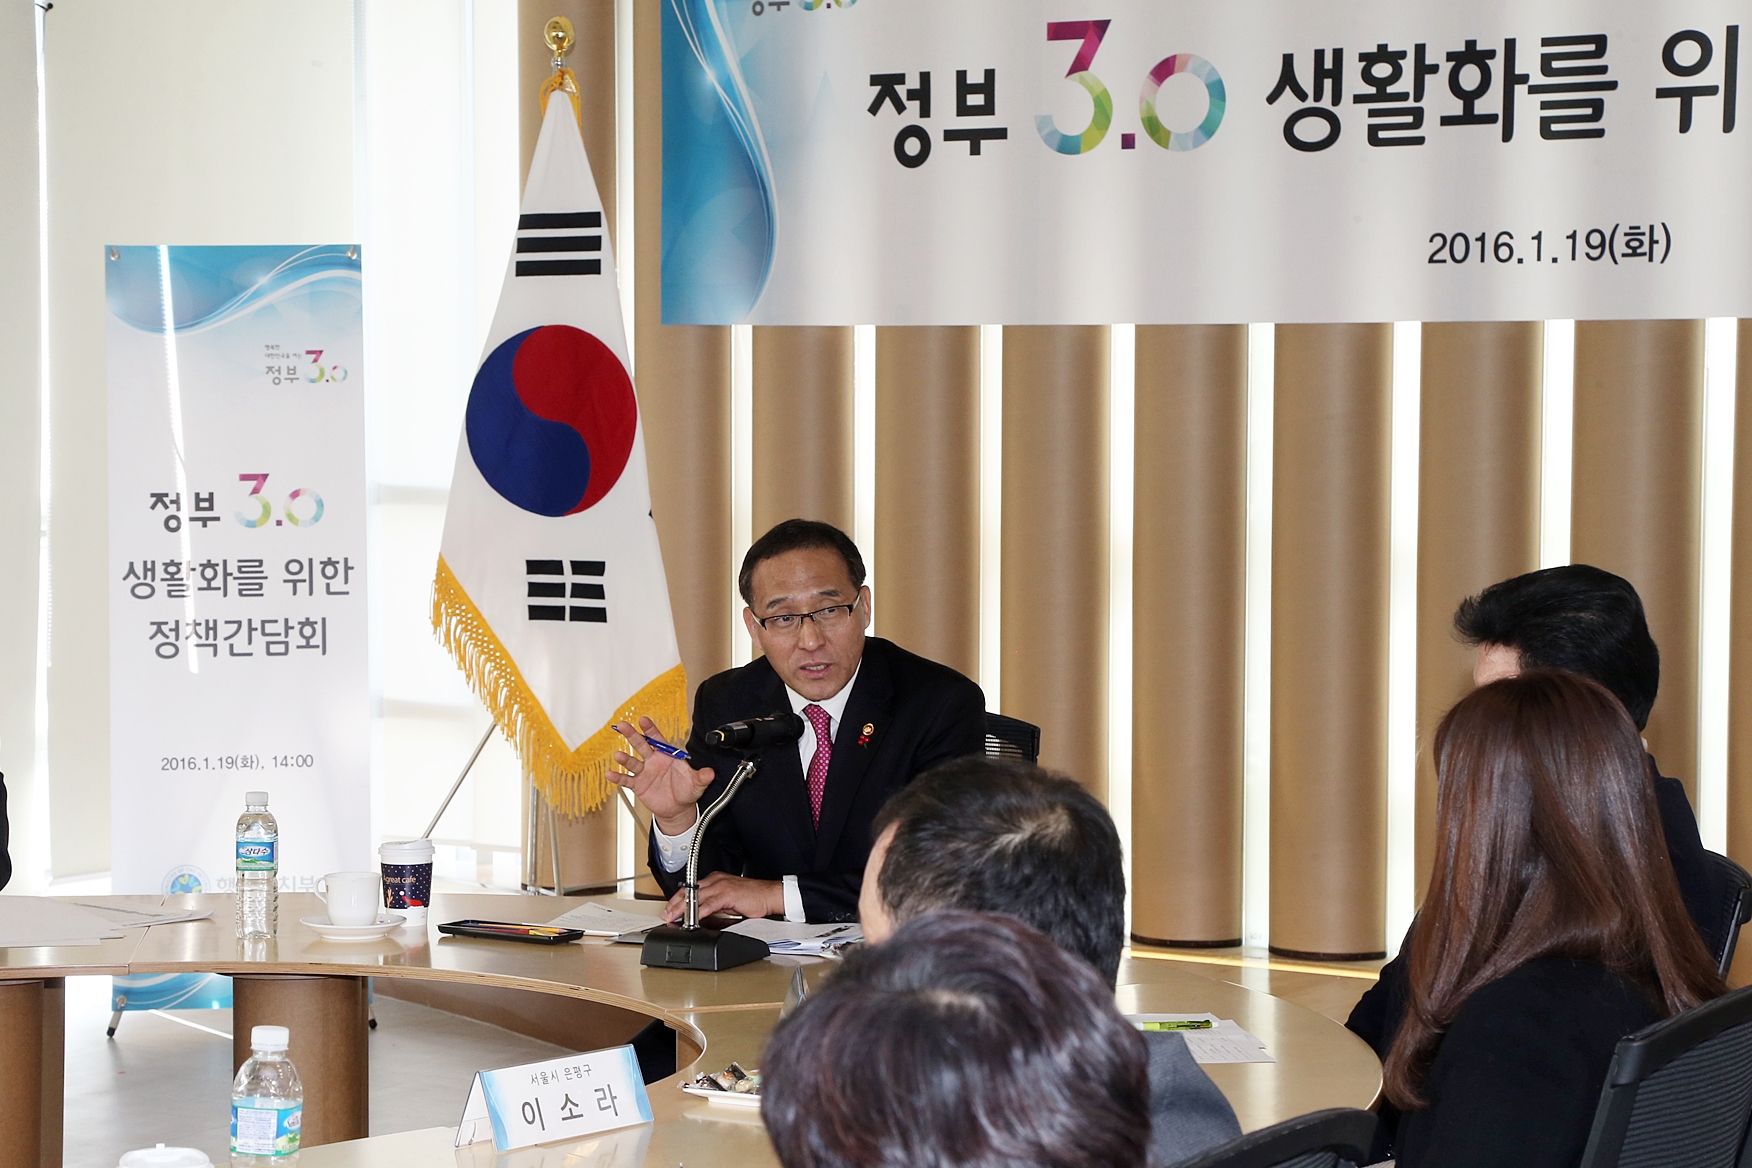 홍윤식 장관, 정부3.0 생활화를 위한 현장 정책간담회